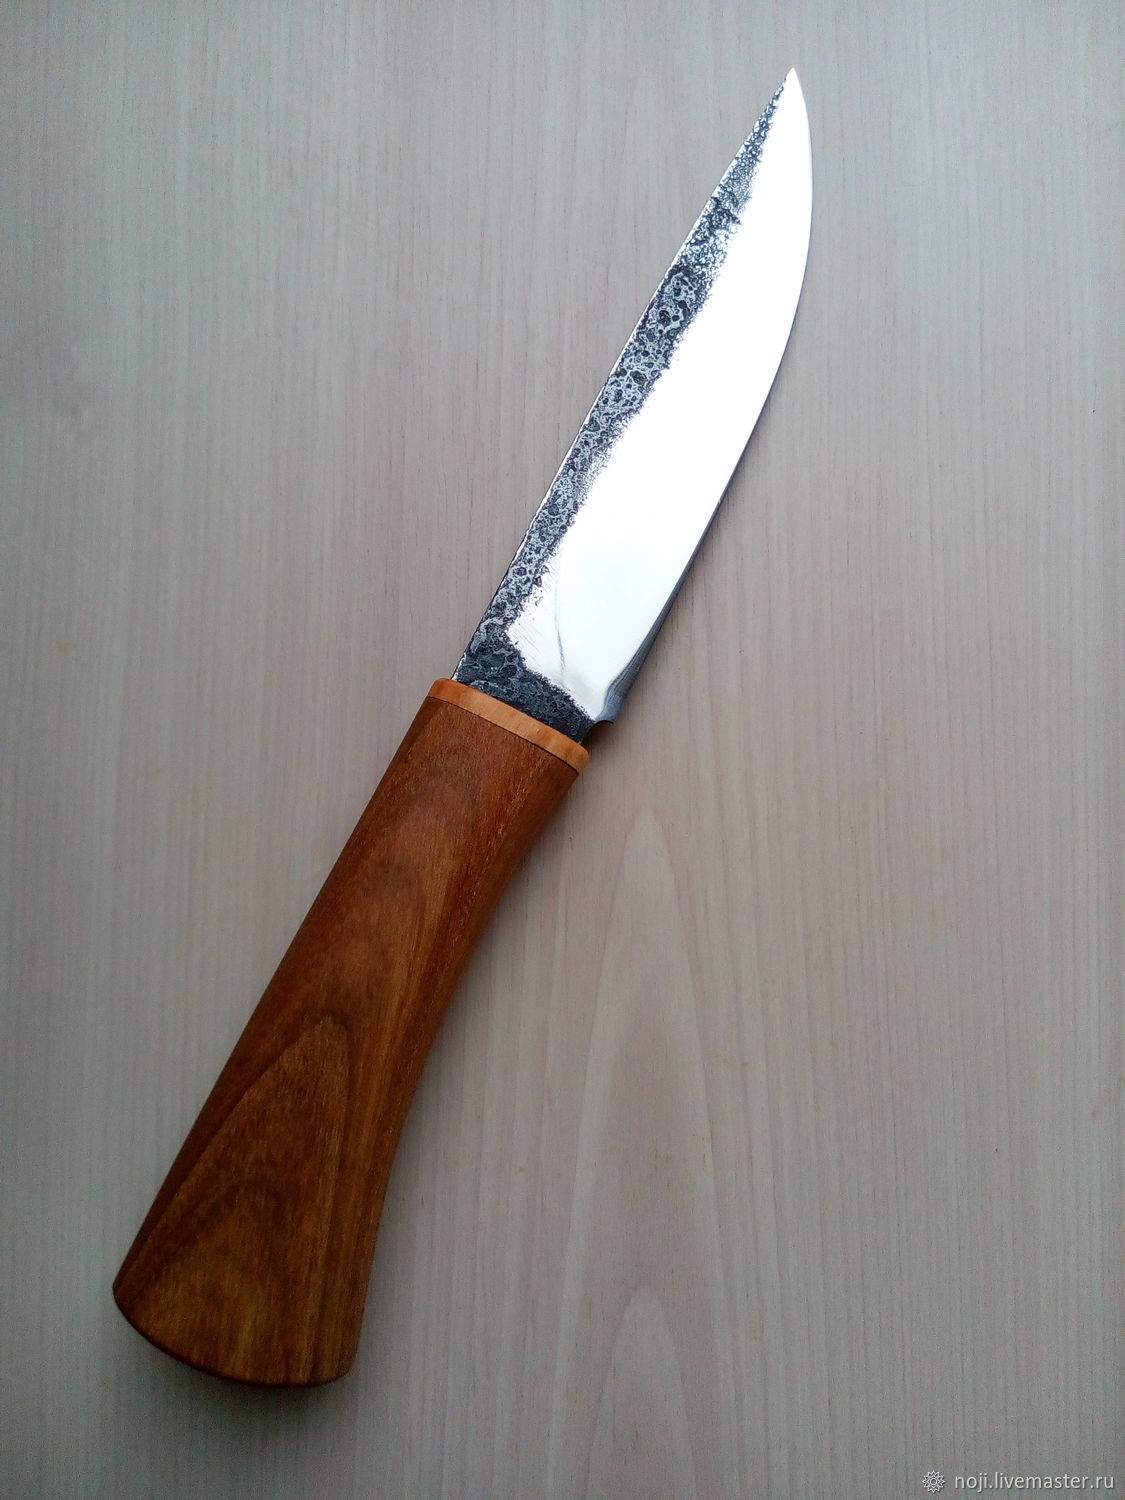  нож ручной работы 